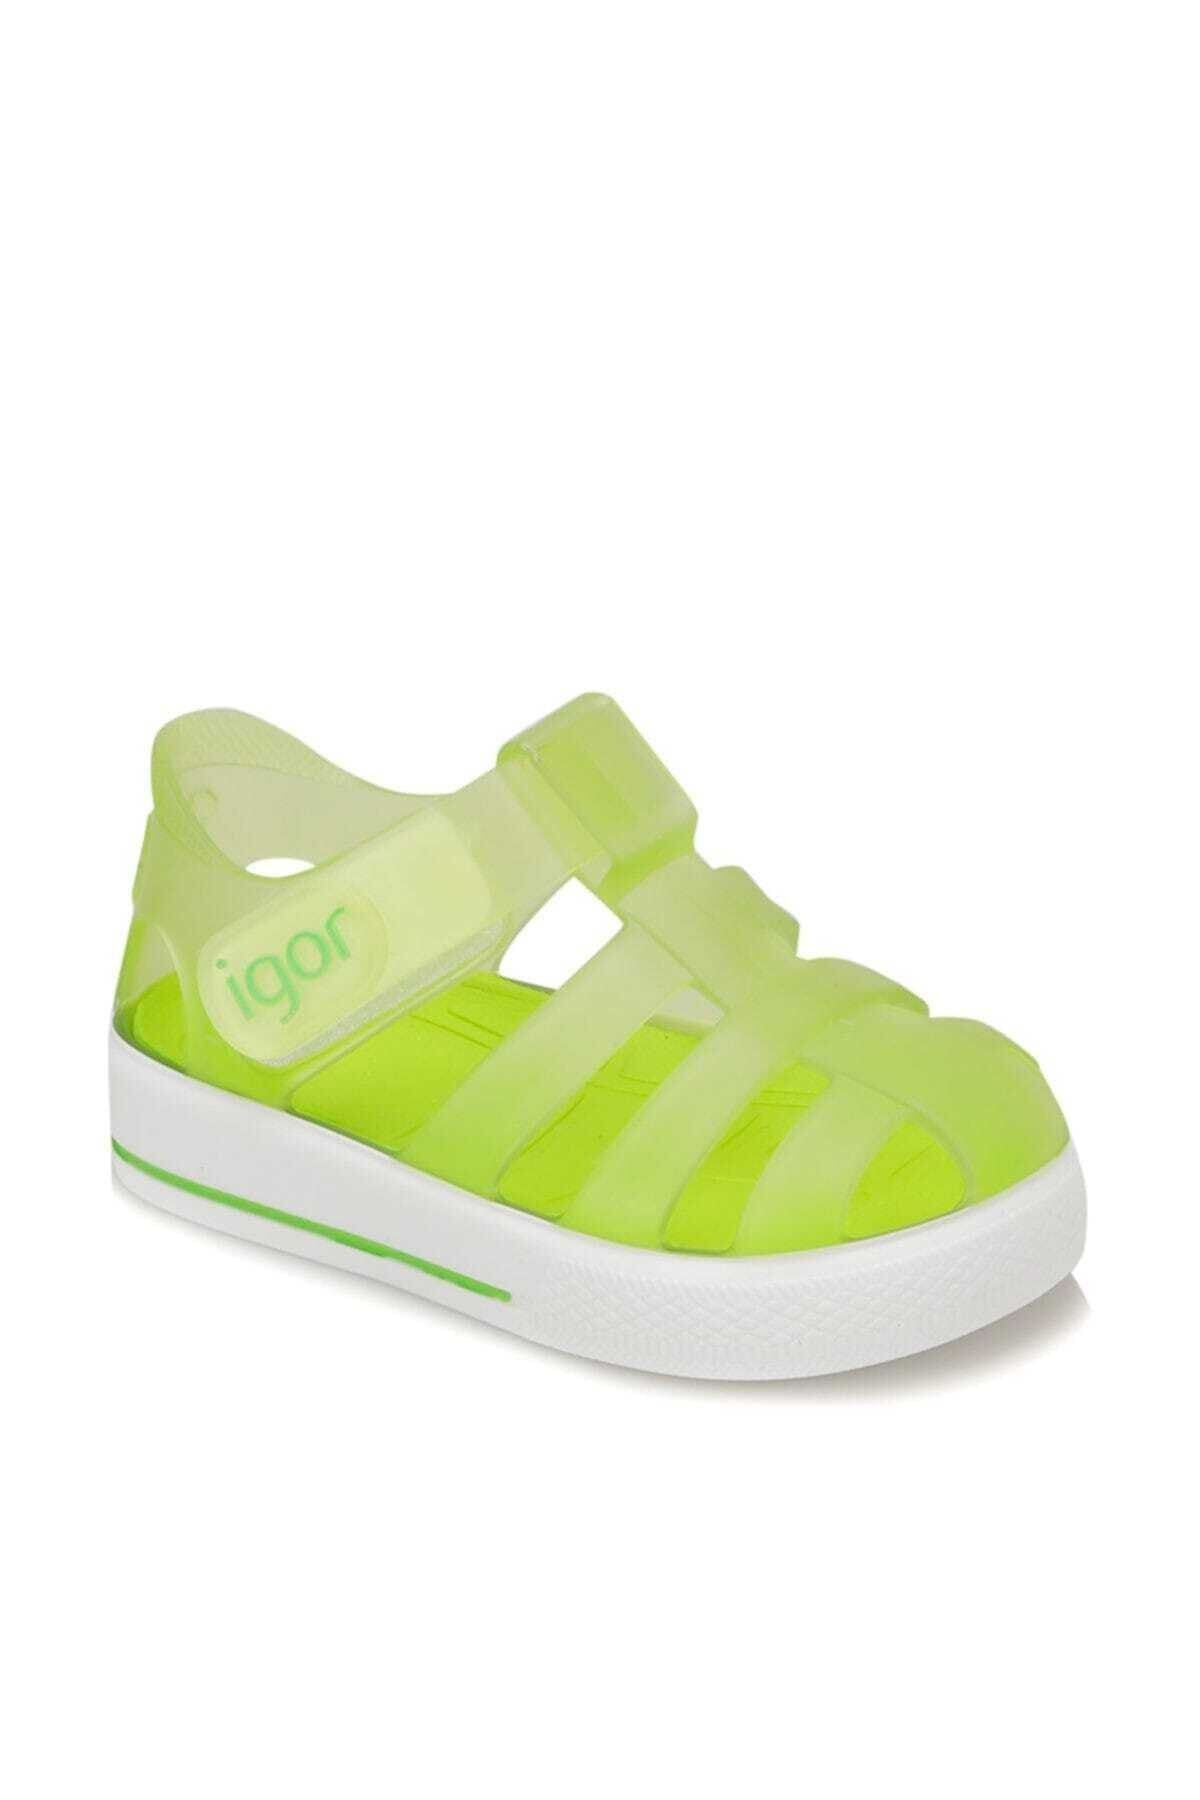 IGOR S10171 Star Çocuk Fıstık Yeşili Sandalet